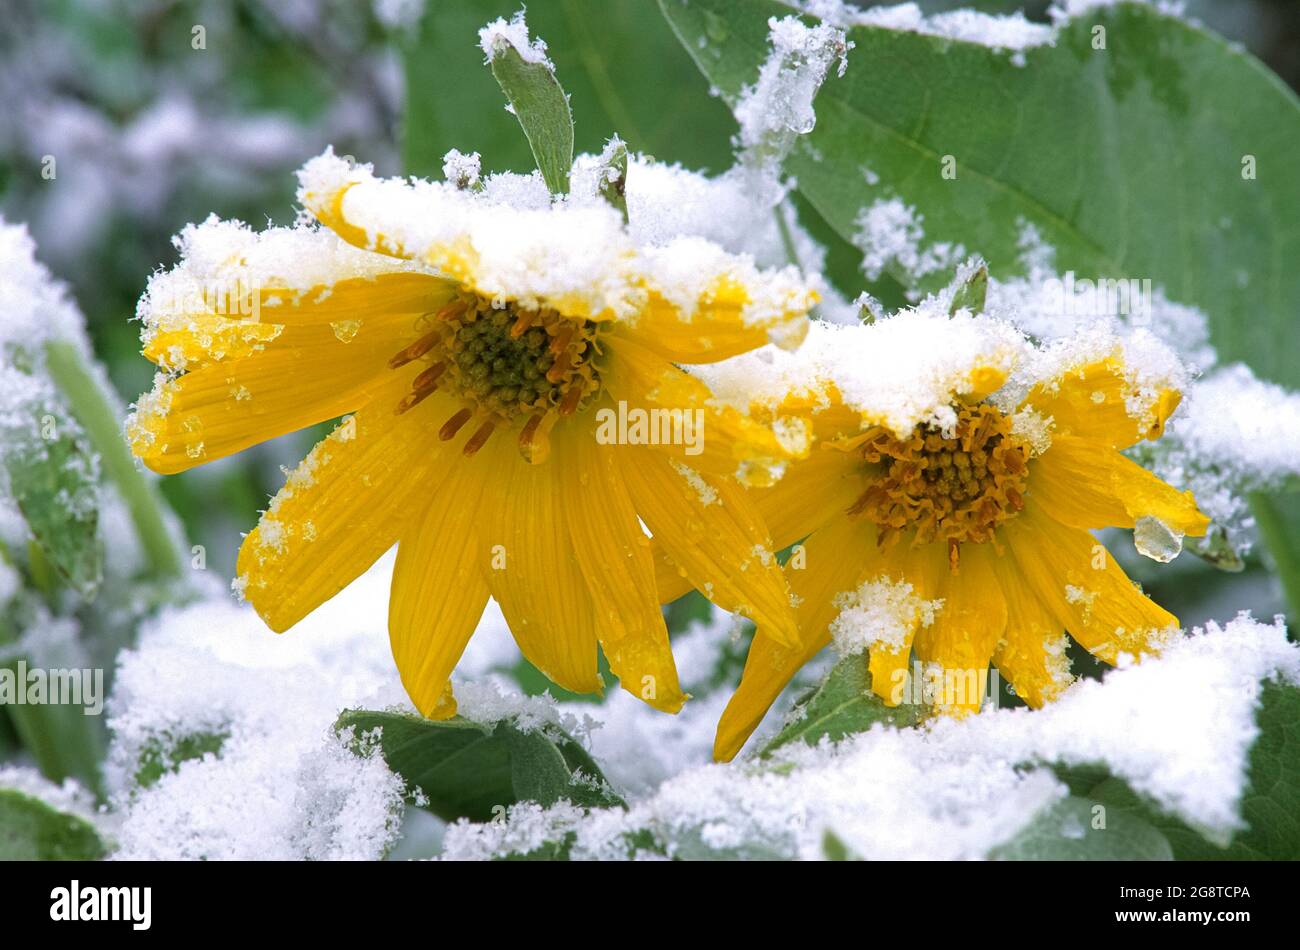 Neige d'été sur les fleurs des balsamroot, réserve écologique du lac Skwaha près de Lytton, Colombie-Britannique, Canada Banque D'Images